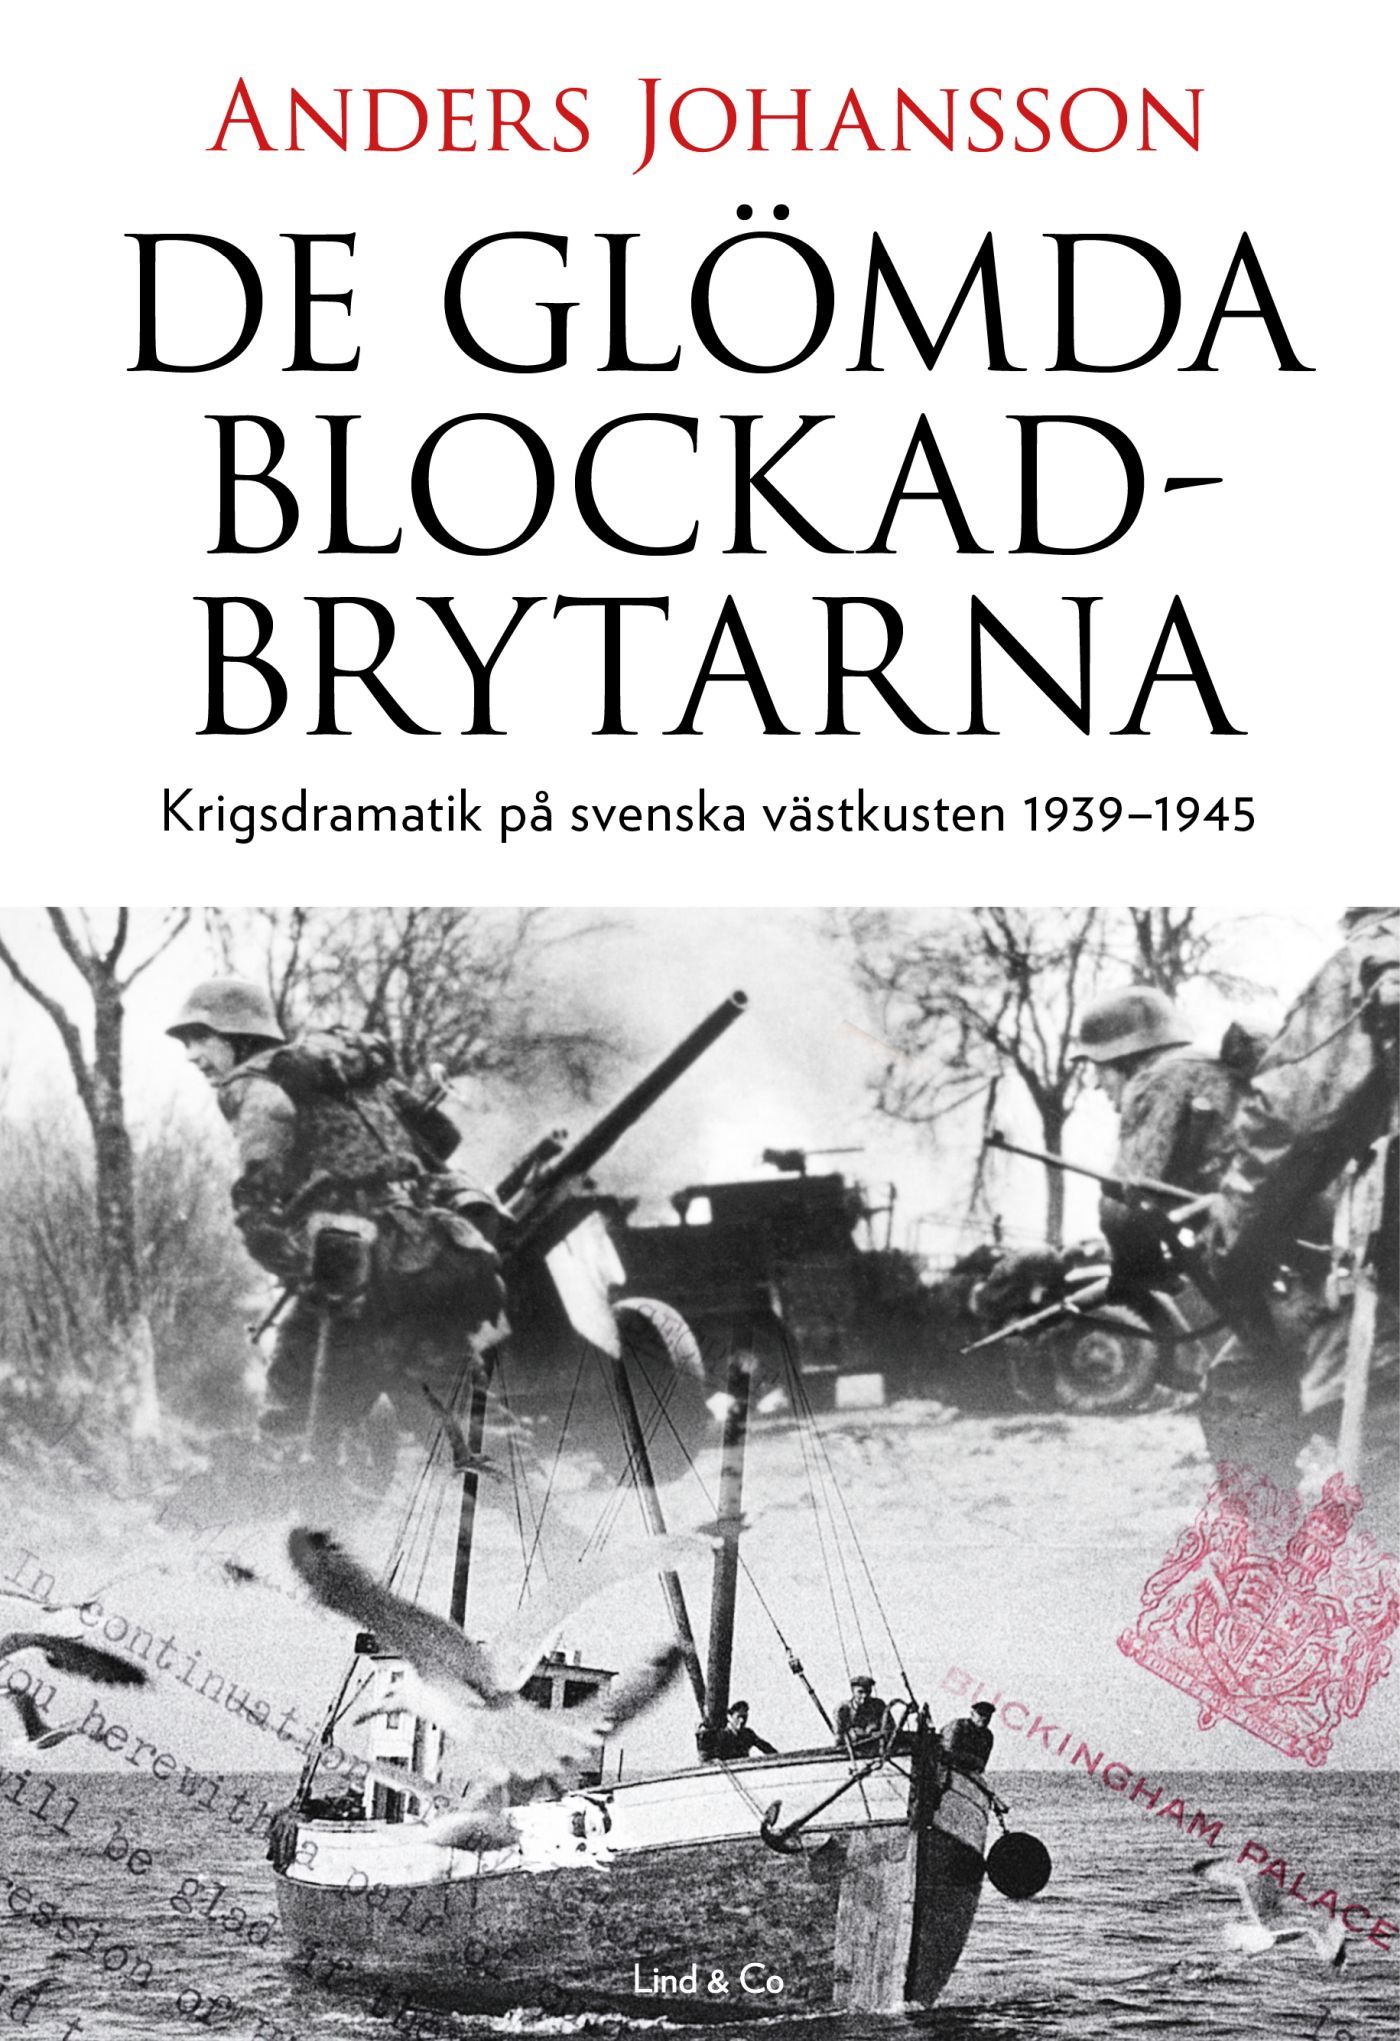 De glömda blockadbrytarna : Krigsdramatik på svenska västkusten 1939-1945, e-bog af Anders Johansson